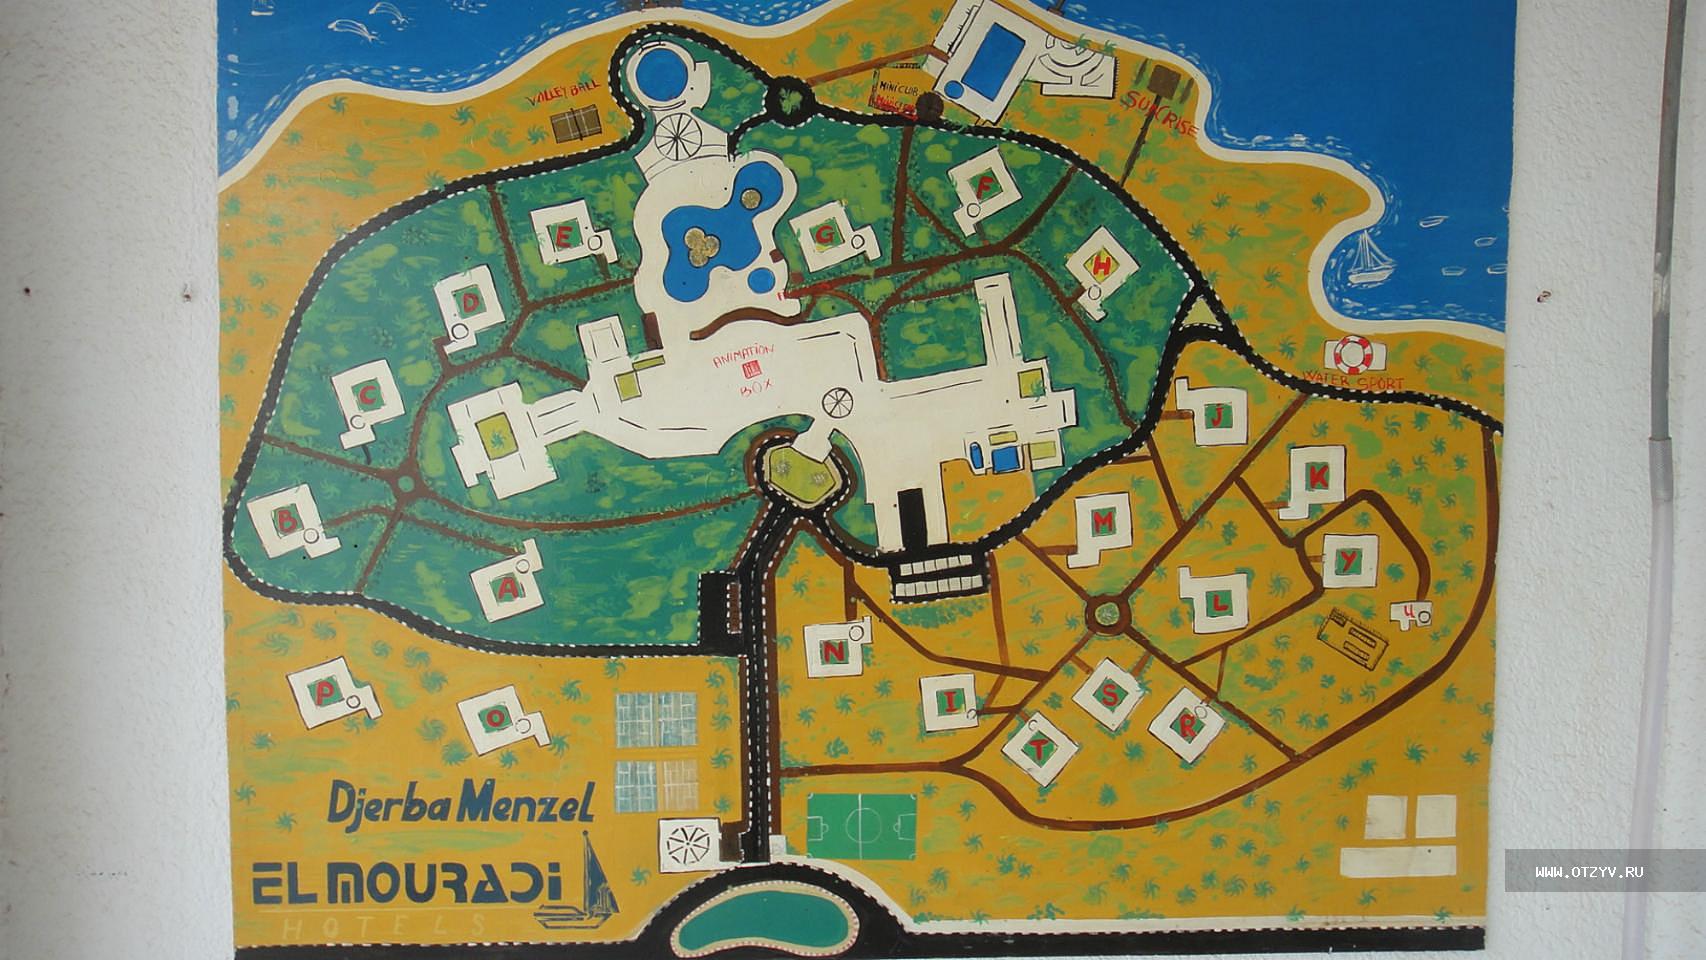 El Mouradi Djerba Menzel